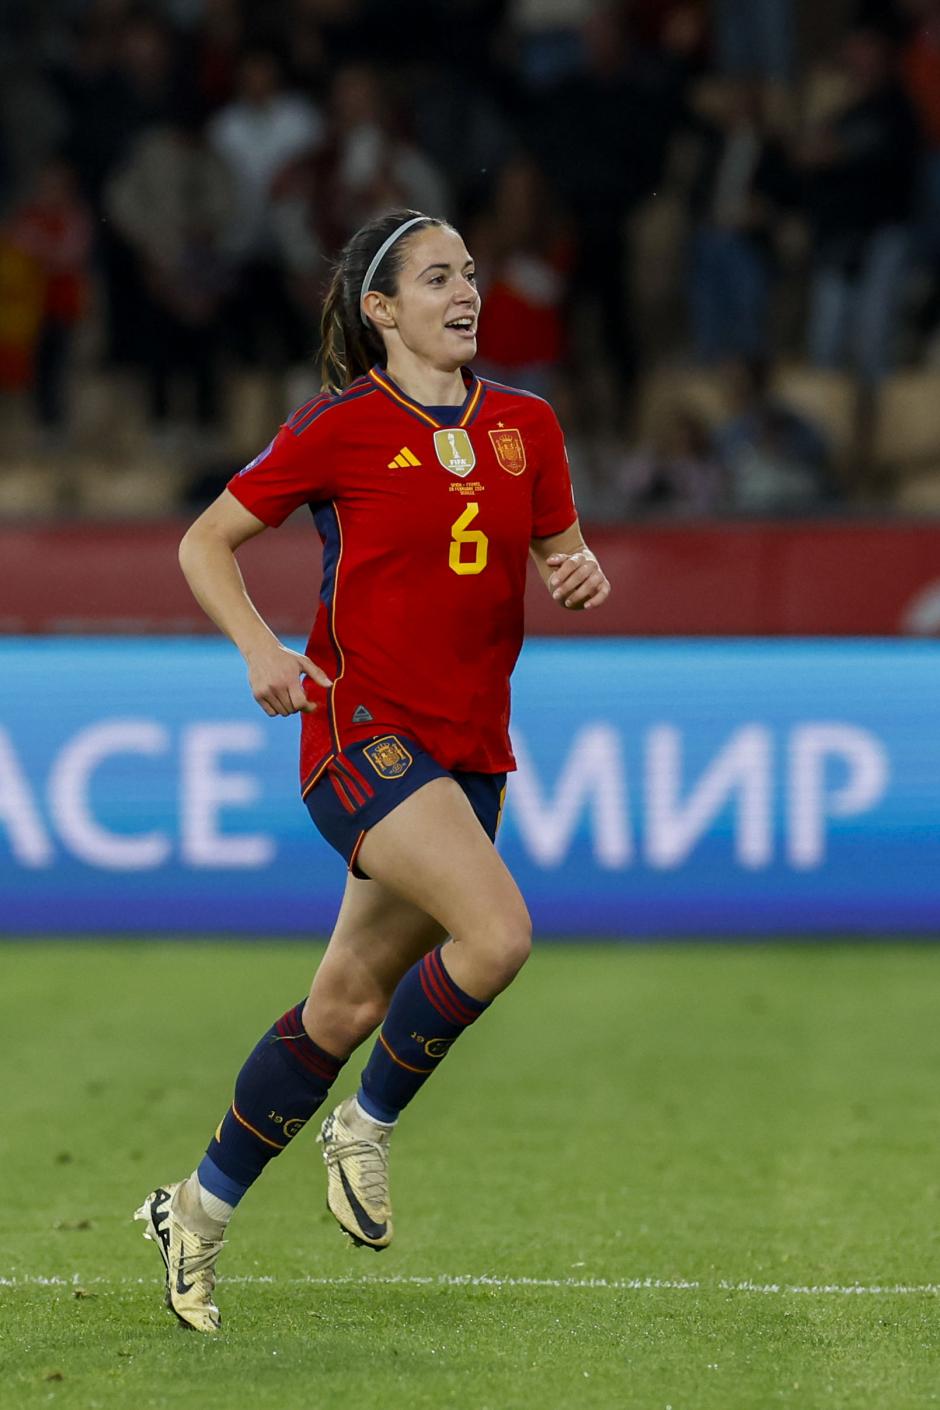 La centrocampista de la selección española Aitana Bonmatí celebra tras marcar el 1-0 durante la final de la Liga de Naciones Femenina entre España y Francia.